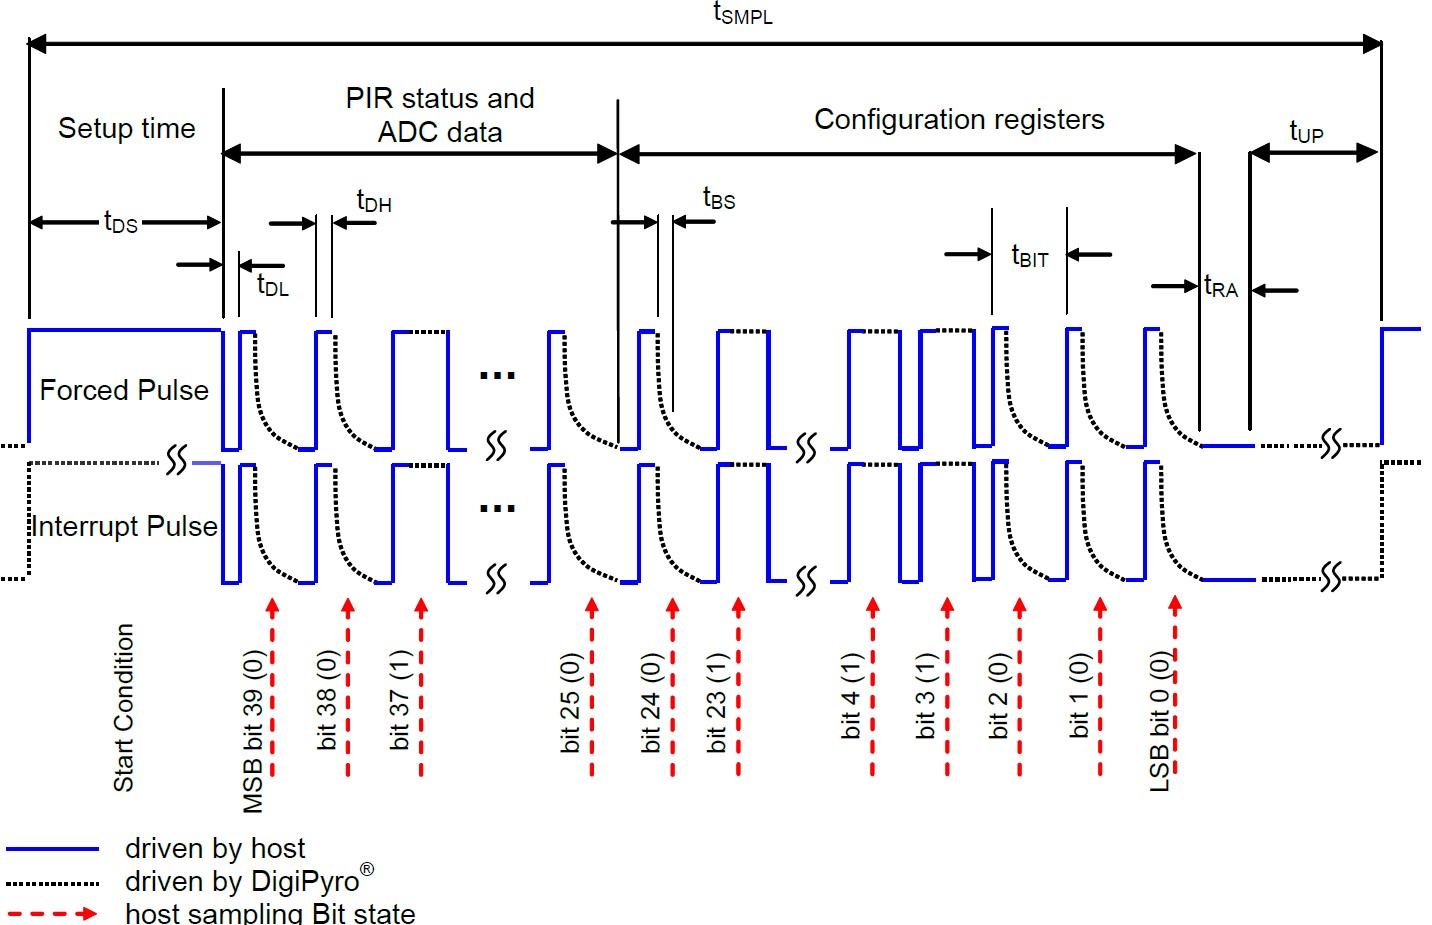 Рисунок 5 - Процесс чтения данных из детектора PYD 1588, PYD 1598 по интерфейсу “Direct Link”